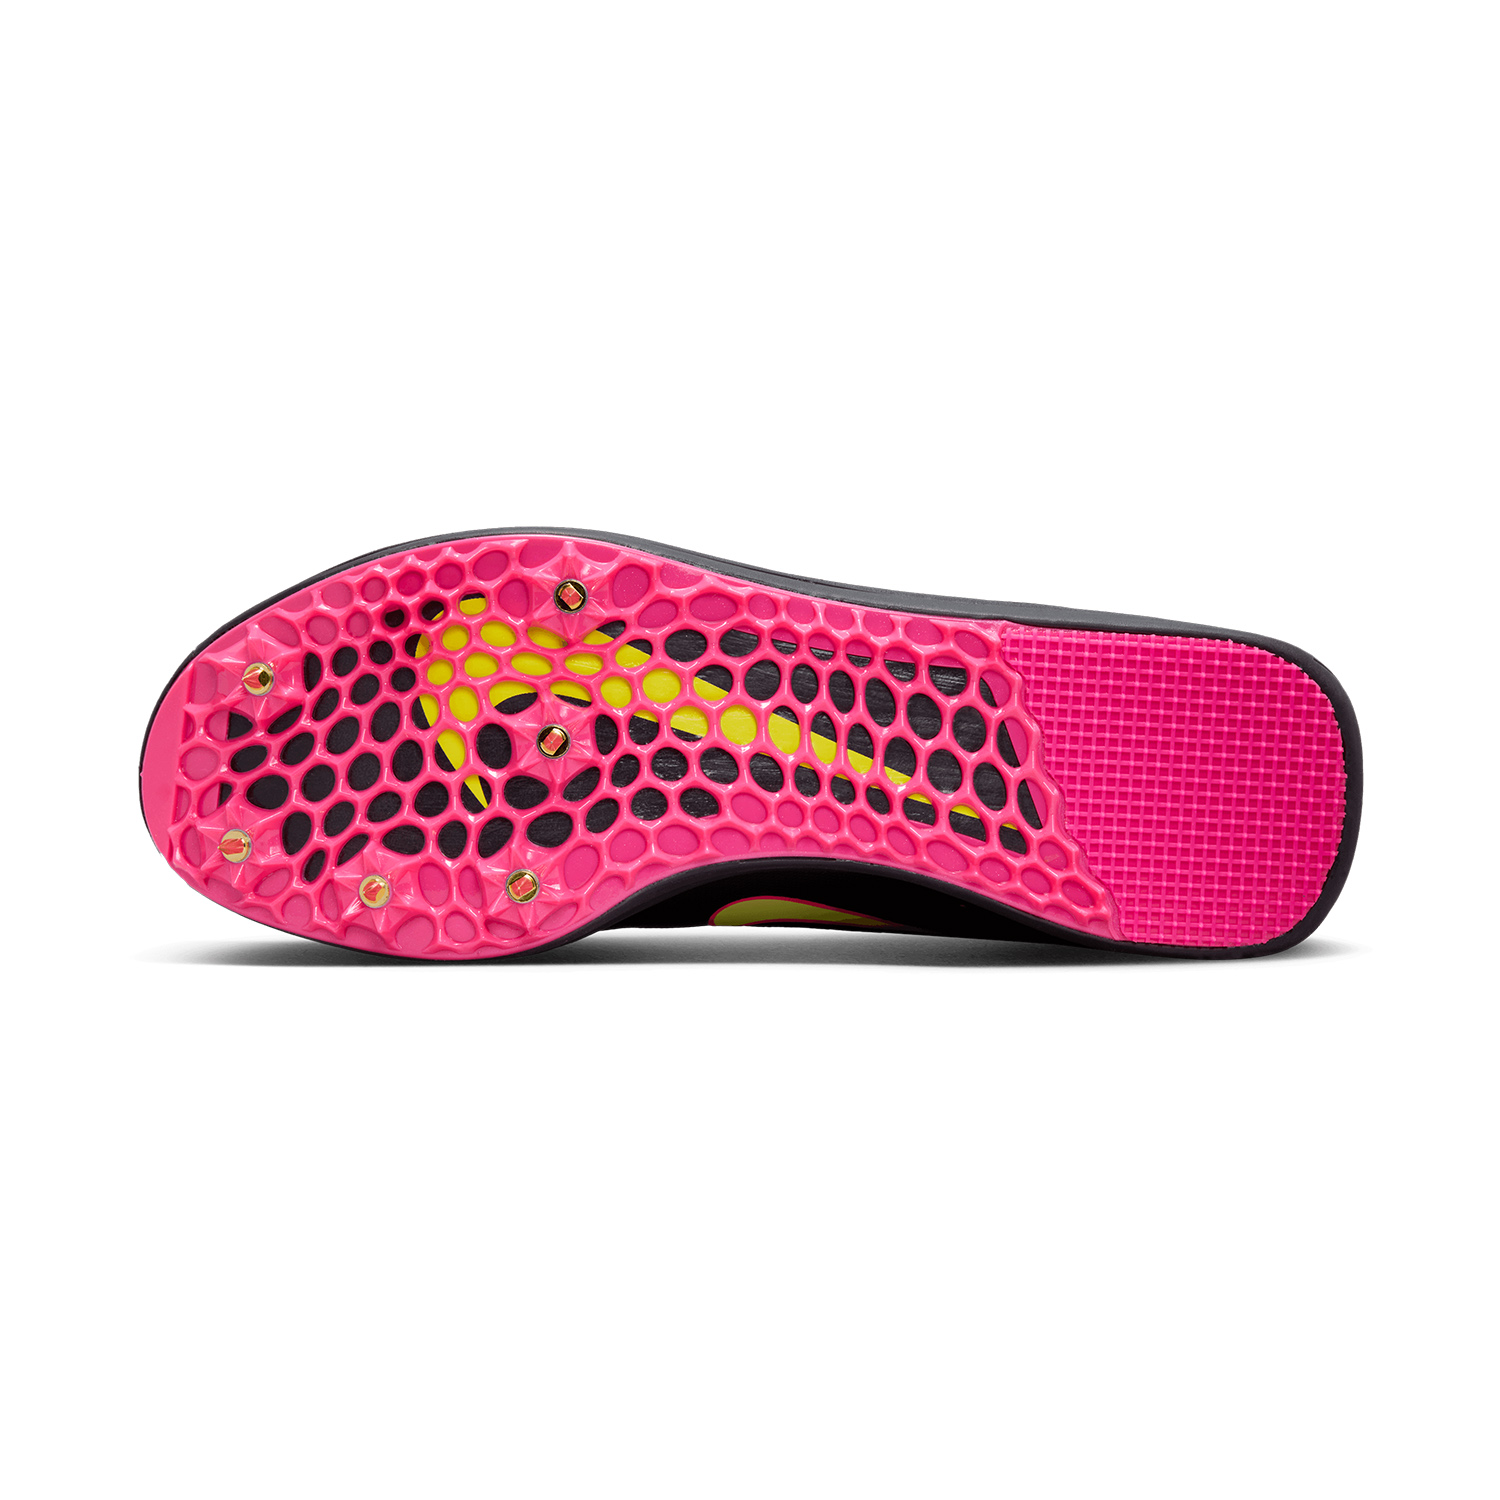 Nike Triple Jump Elite 2 Athletic Shoes - Black/Fierce Pink